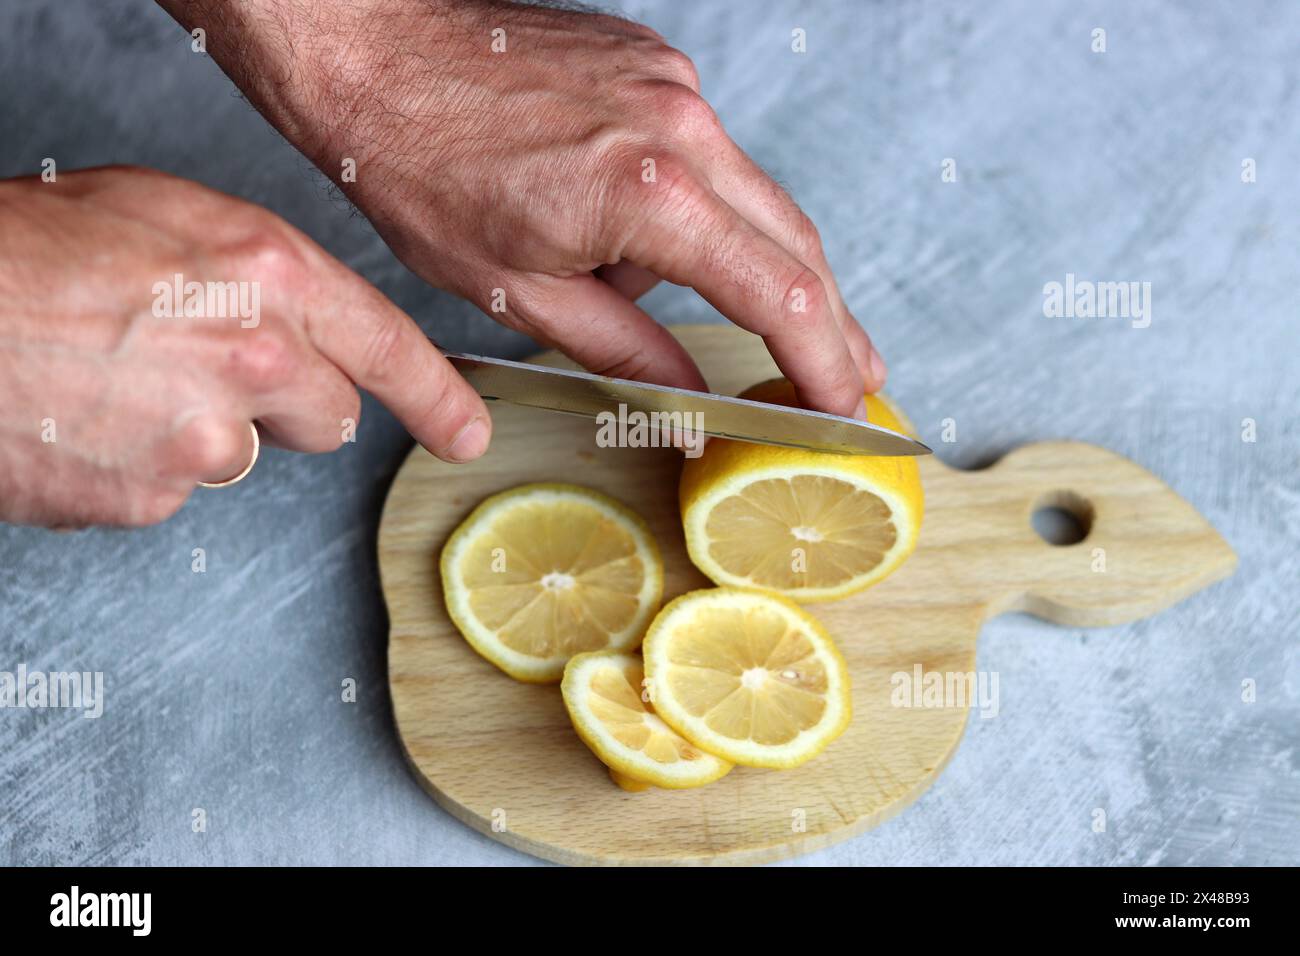 Mains masculines coupant le citron sur une planche de bois. Fond gris avec espace de copie. Photo de préparation de limonade. Banque D'Images